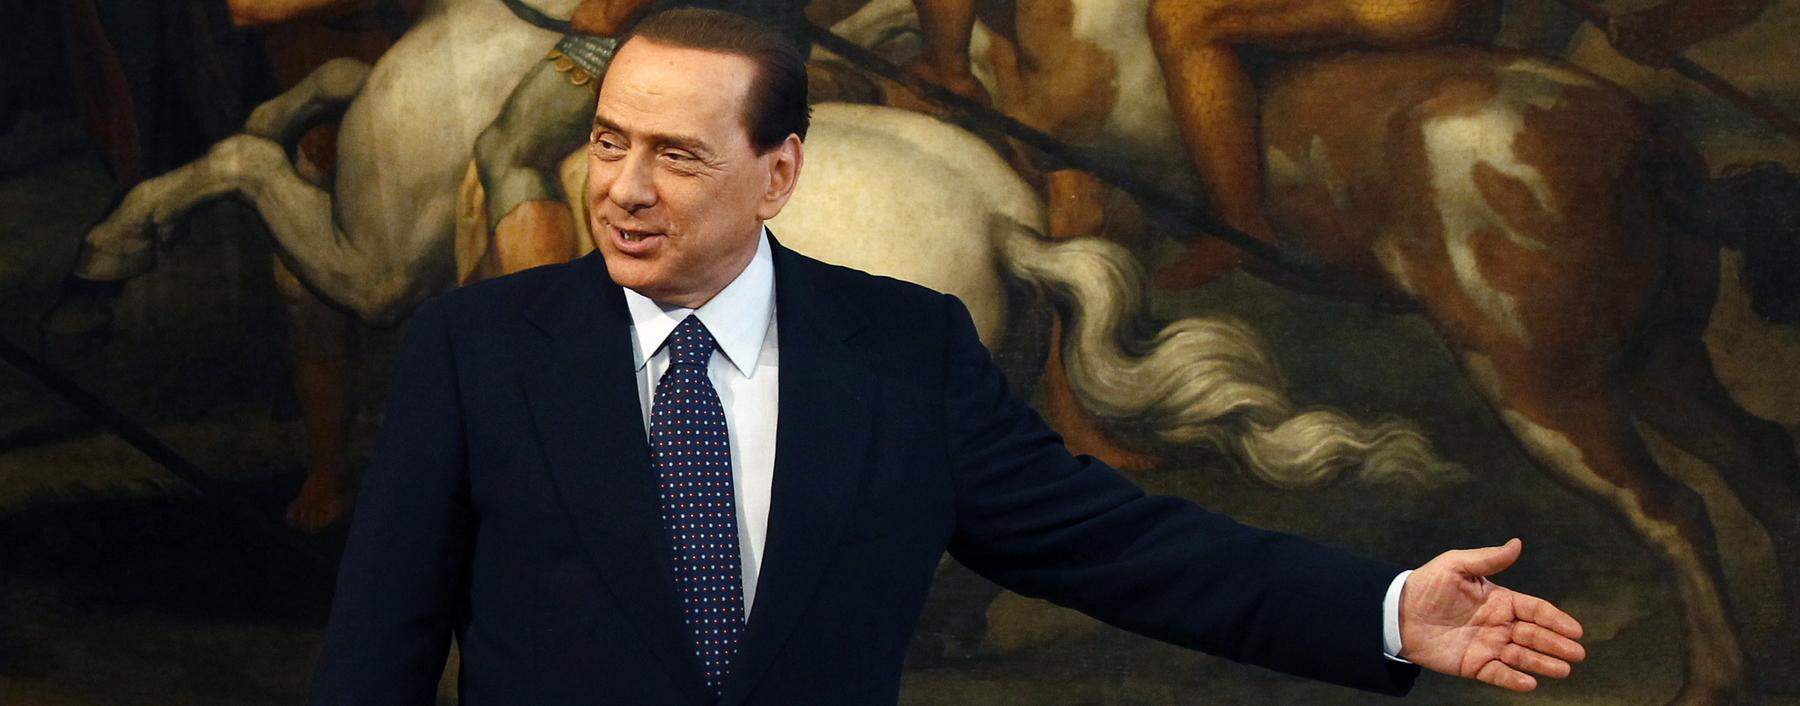 Berlusconi 2010 bei einer Pressekonfernz im Palazzo Chigi, dem Amtssitz des italienischen Ministerpräsidenten.